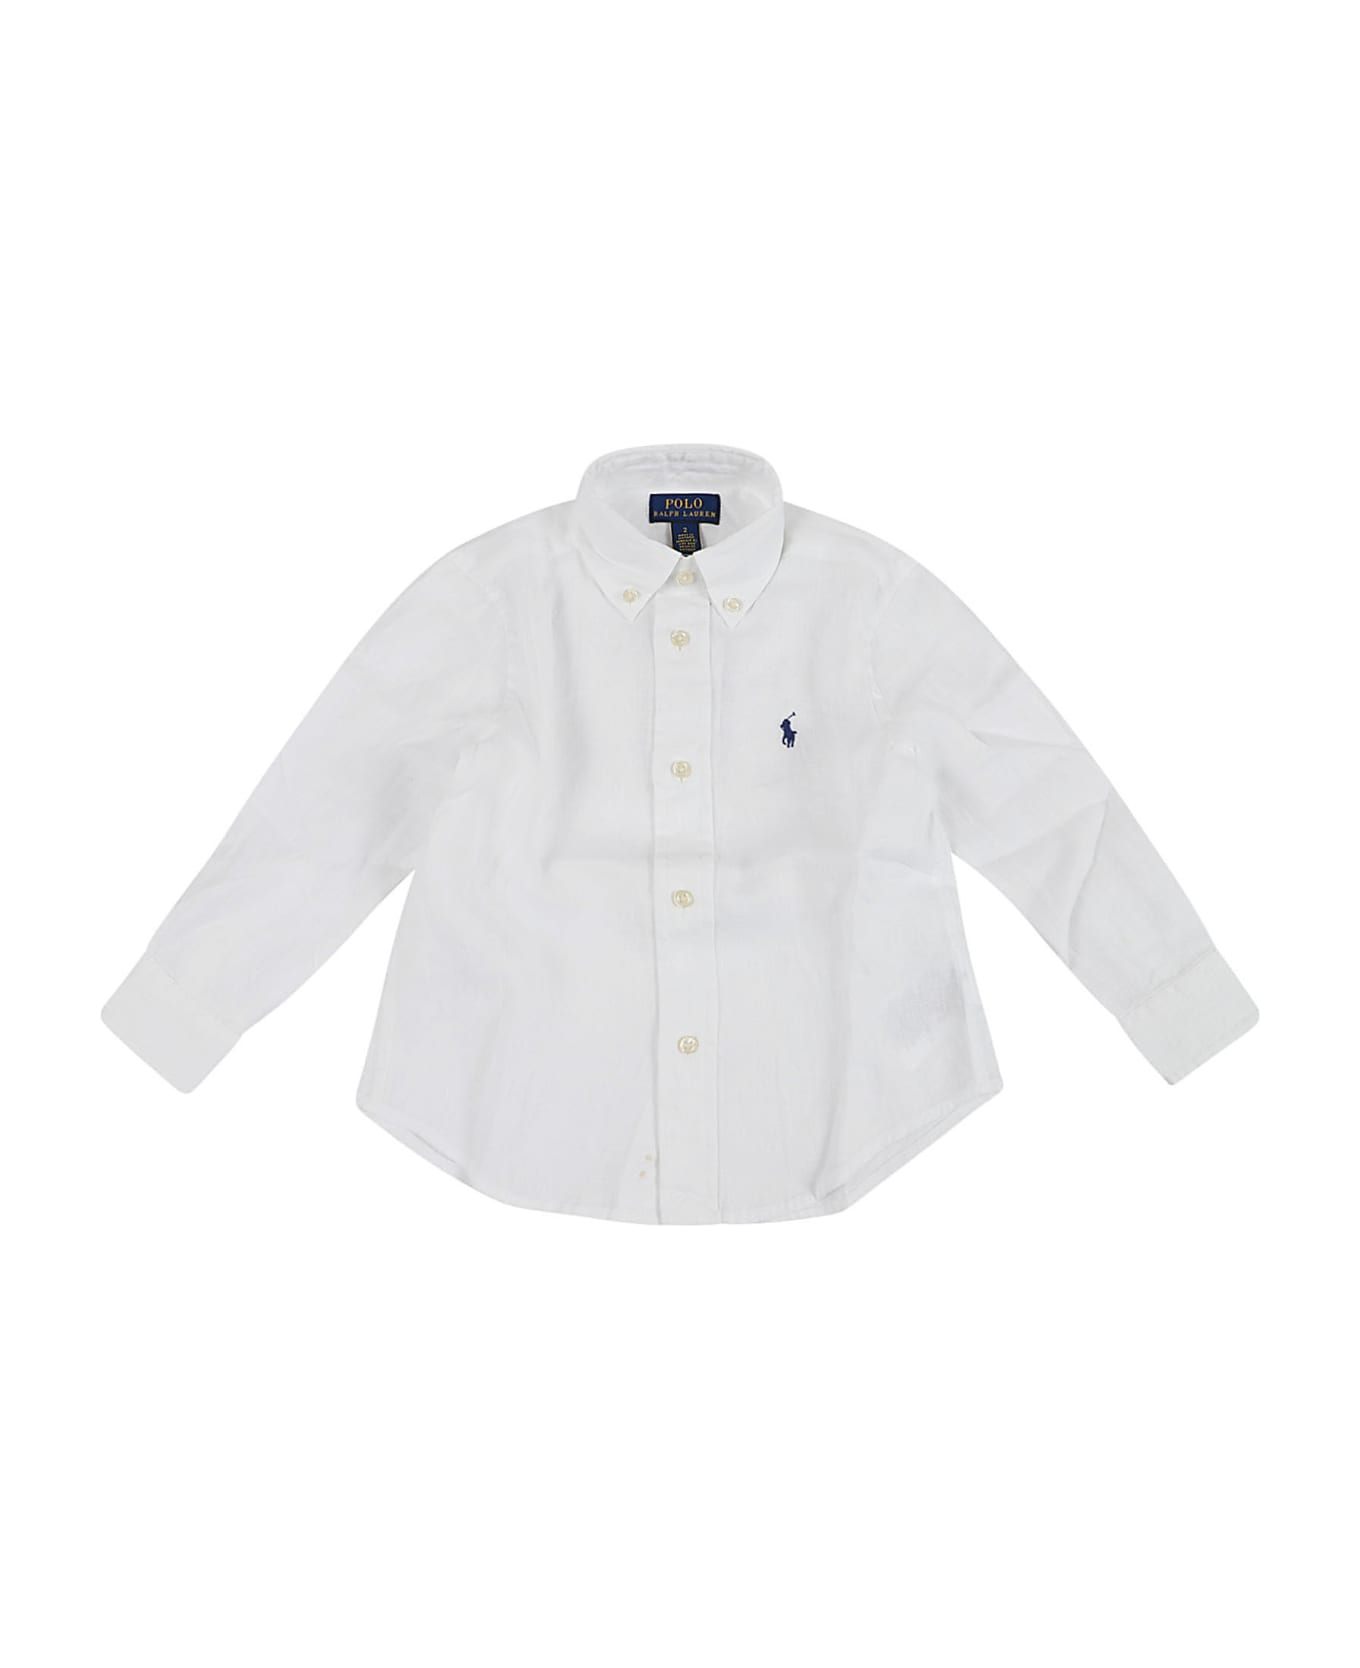 Ralph Lauren Clbdppc-shirts-sport Shirt - White